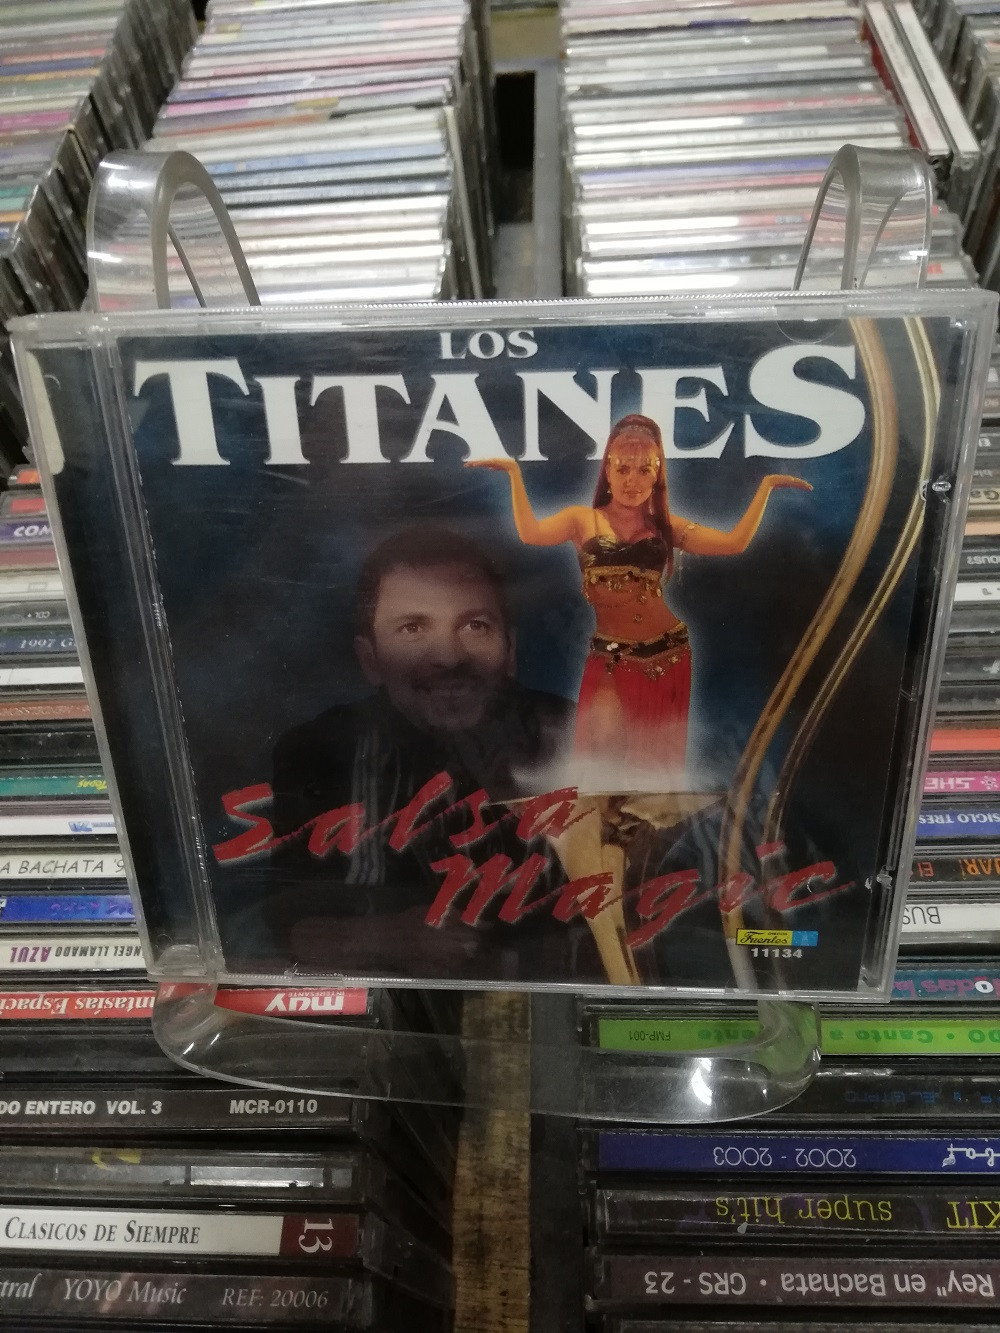 Imagen CD LOS TITANES - SALSA MAGIC 1